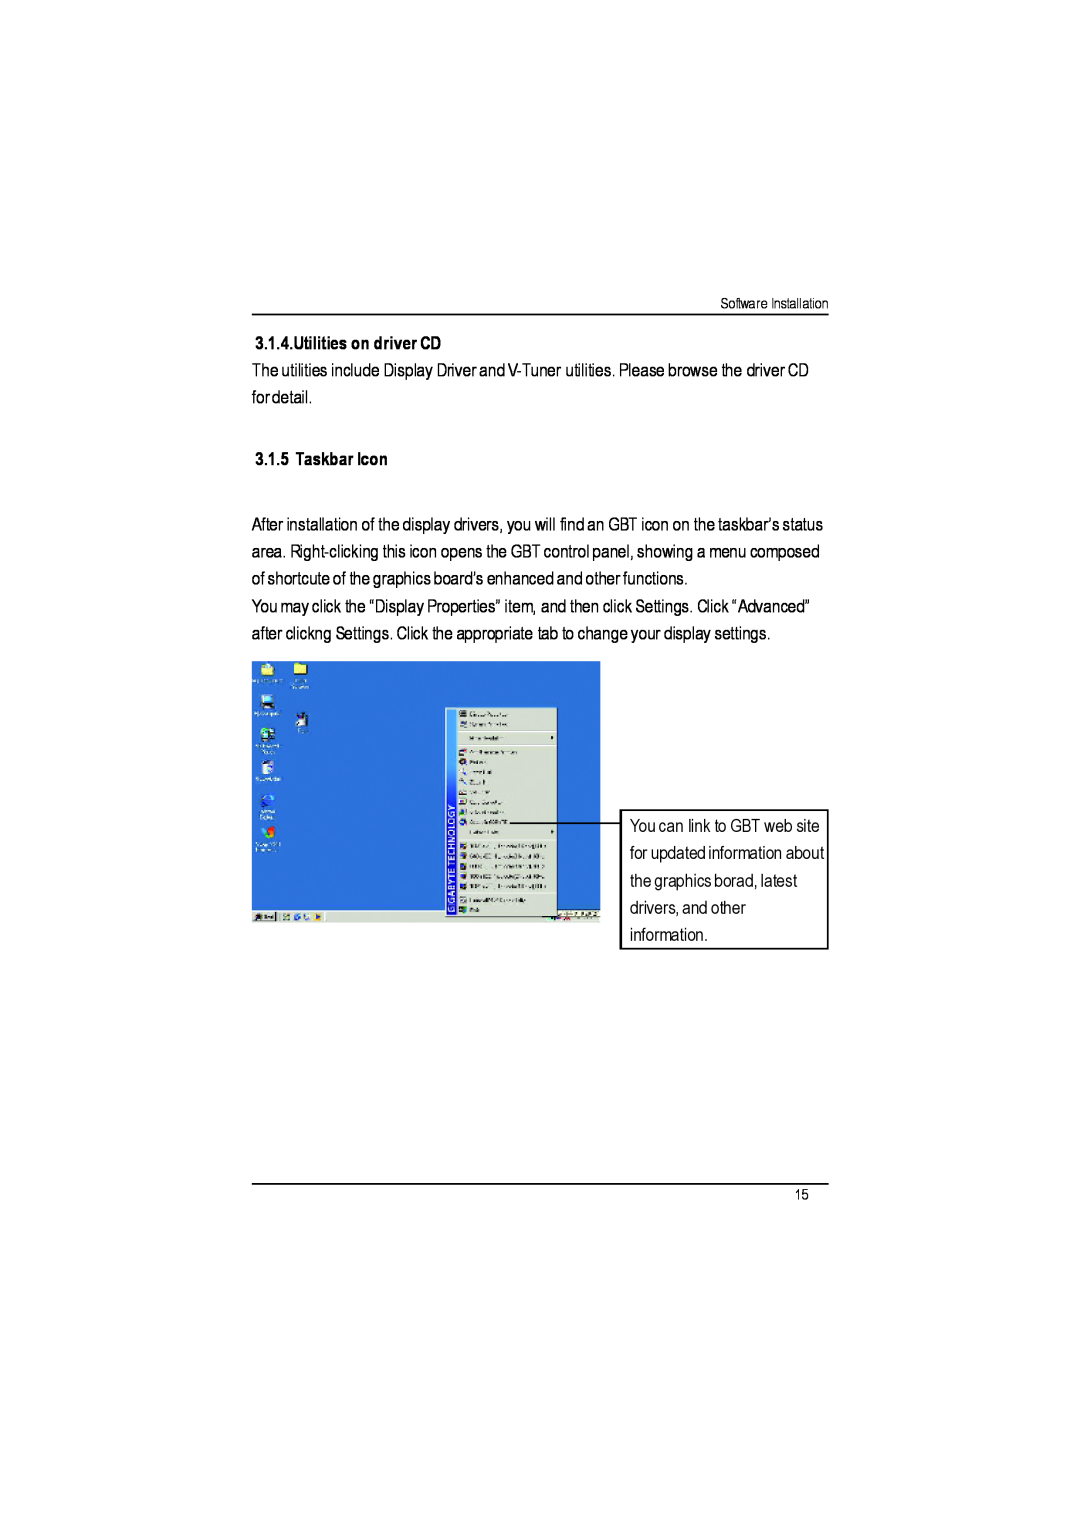 Gigabyte AP64D-H user manual Utilities on driver CD, Taskbar Icon 